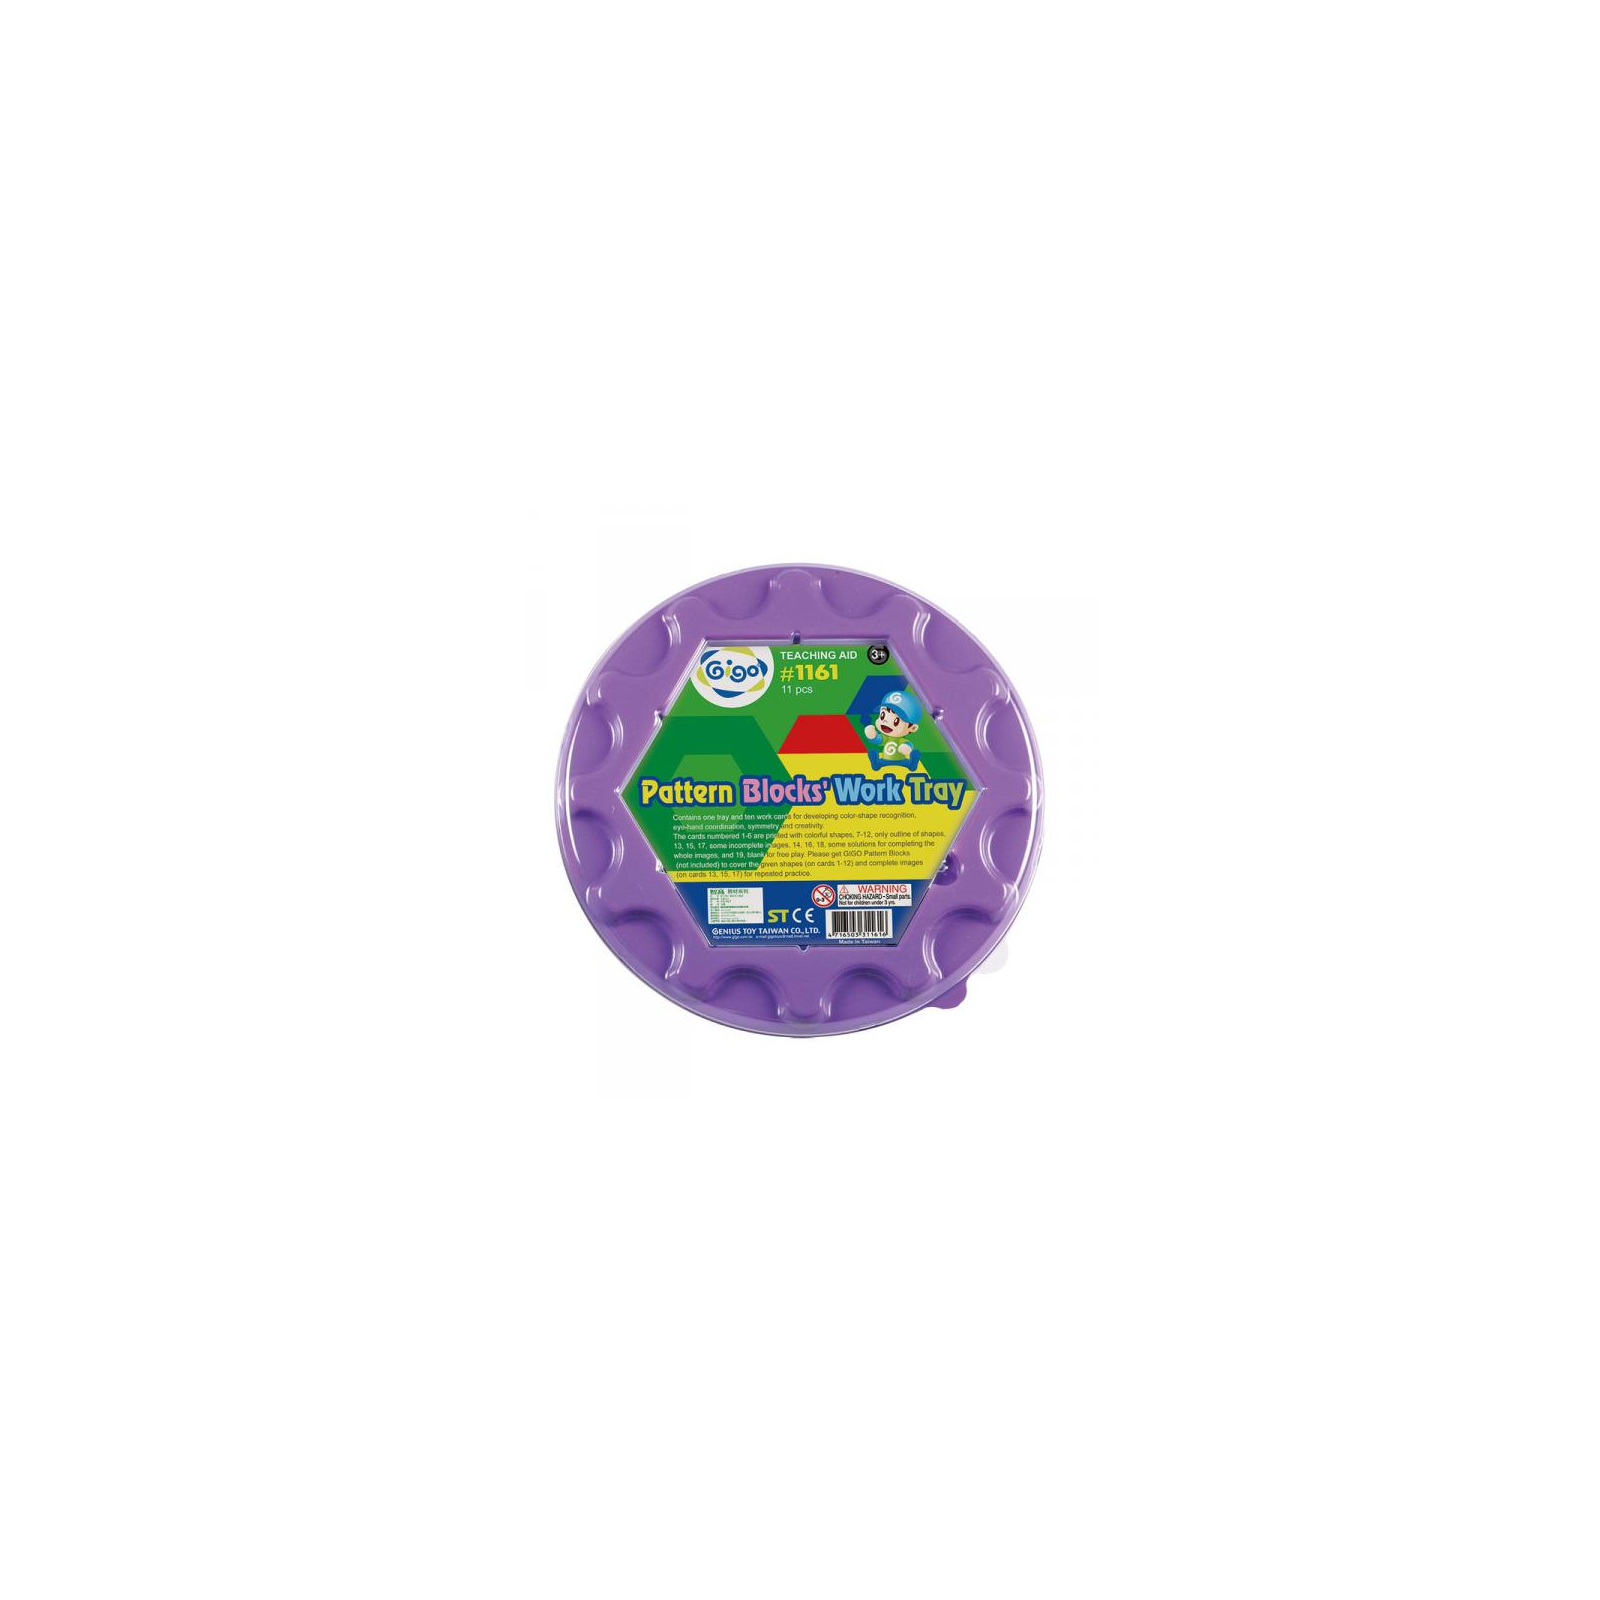 Розвиваюча іграшка Gigo Цікава мозаїка, кругла (1161) зображення 2